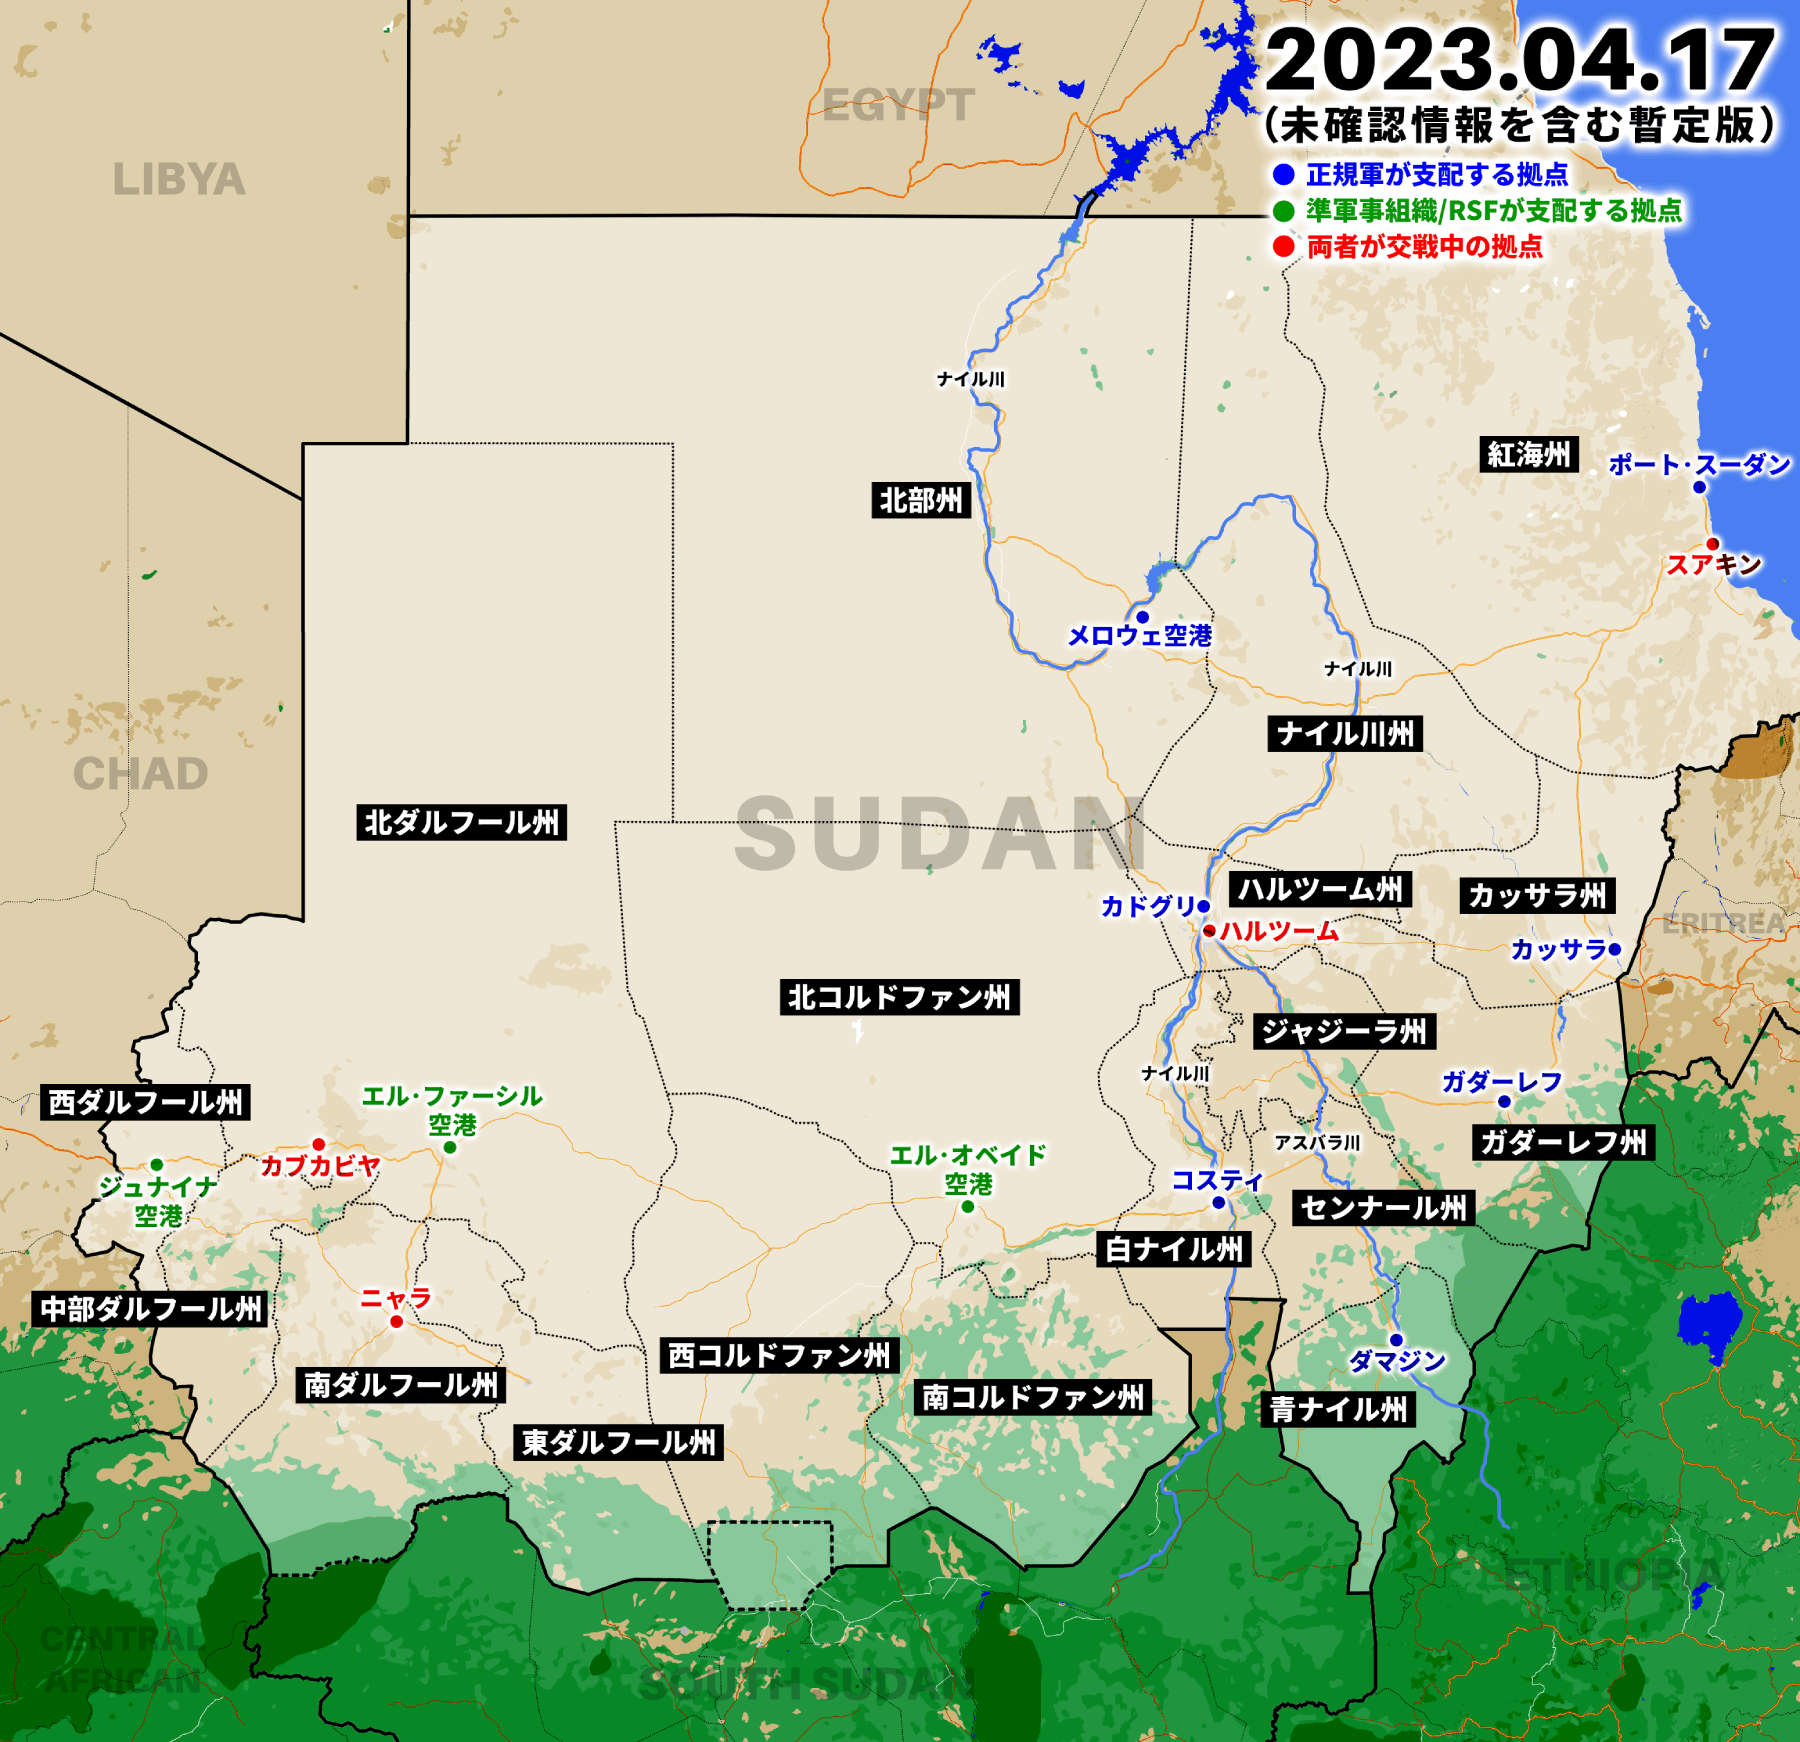 スーダンの首都を巡る戦いは3日目に突入、正規軍とRSFが激しい交戦を再開